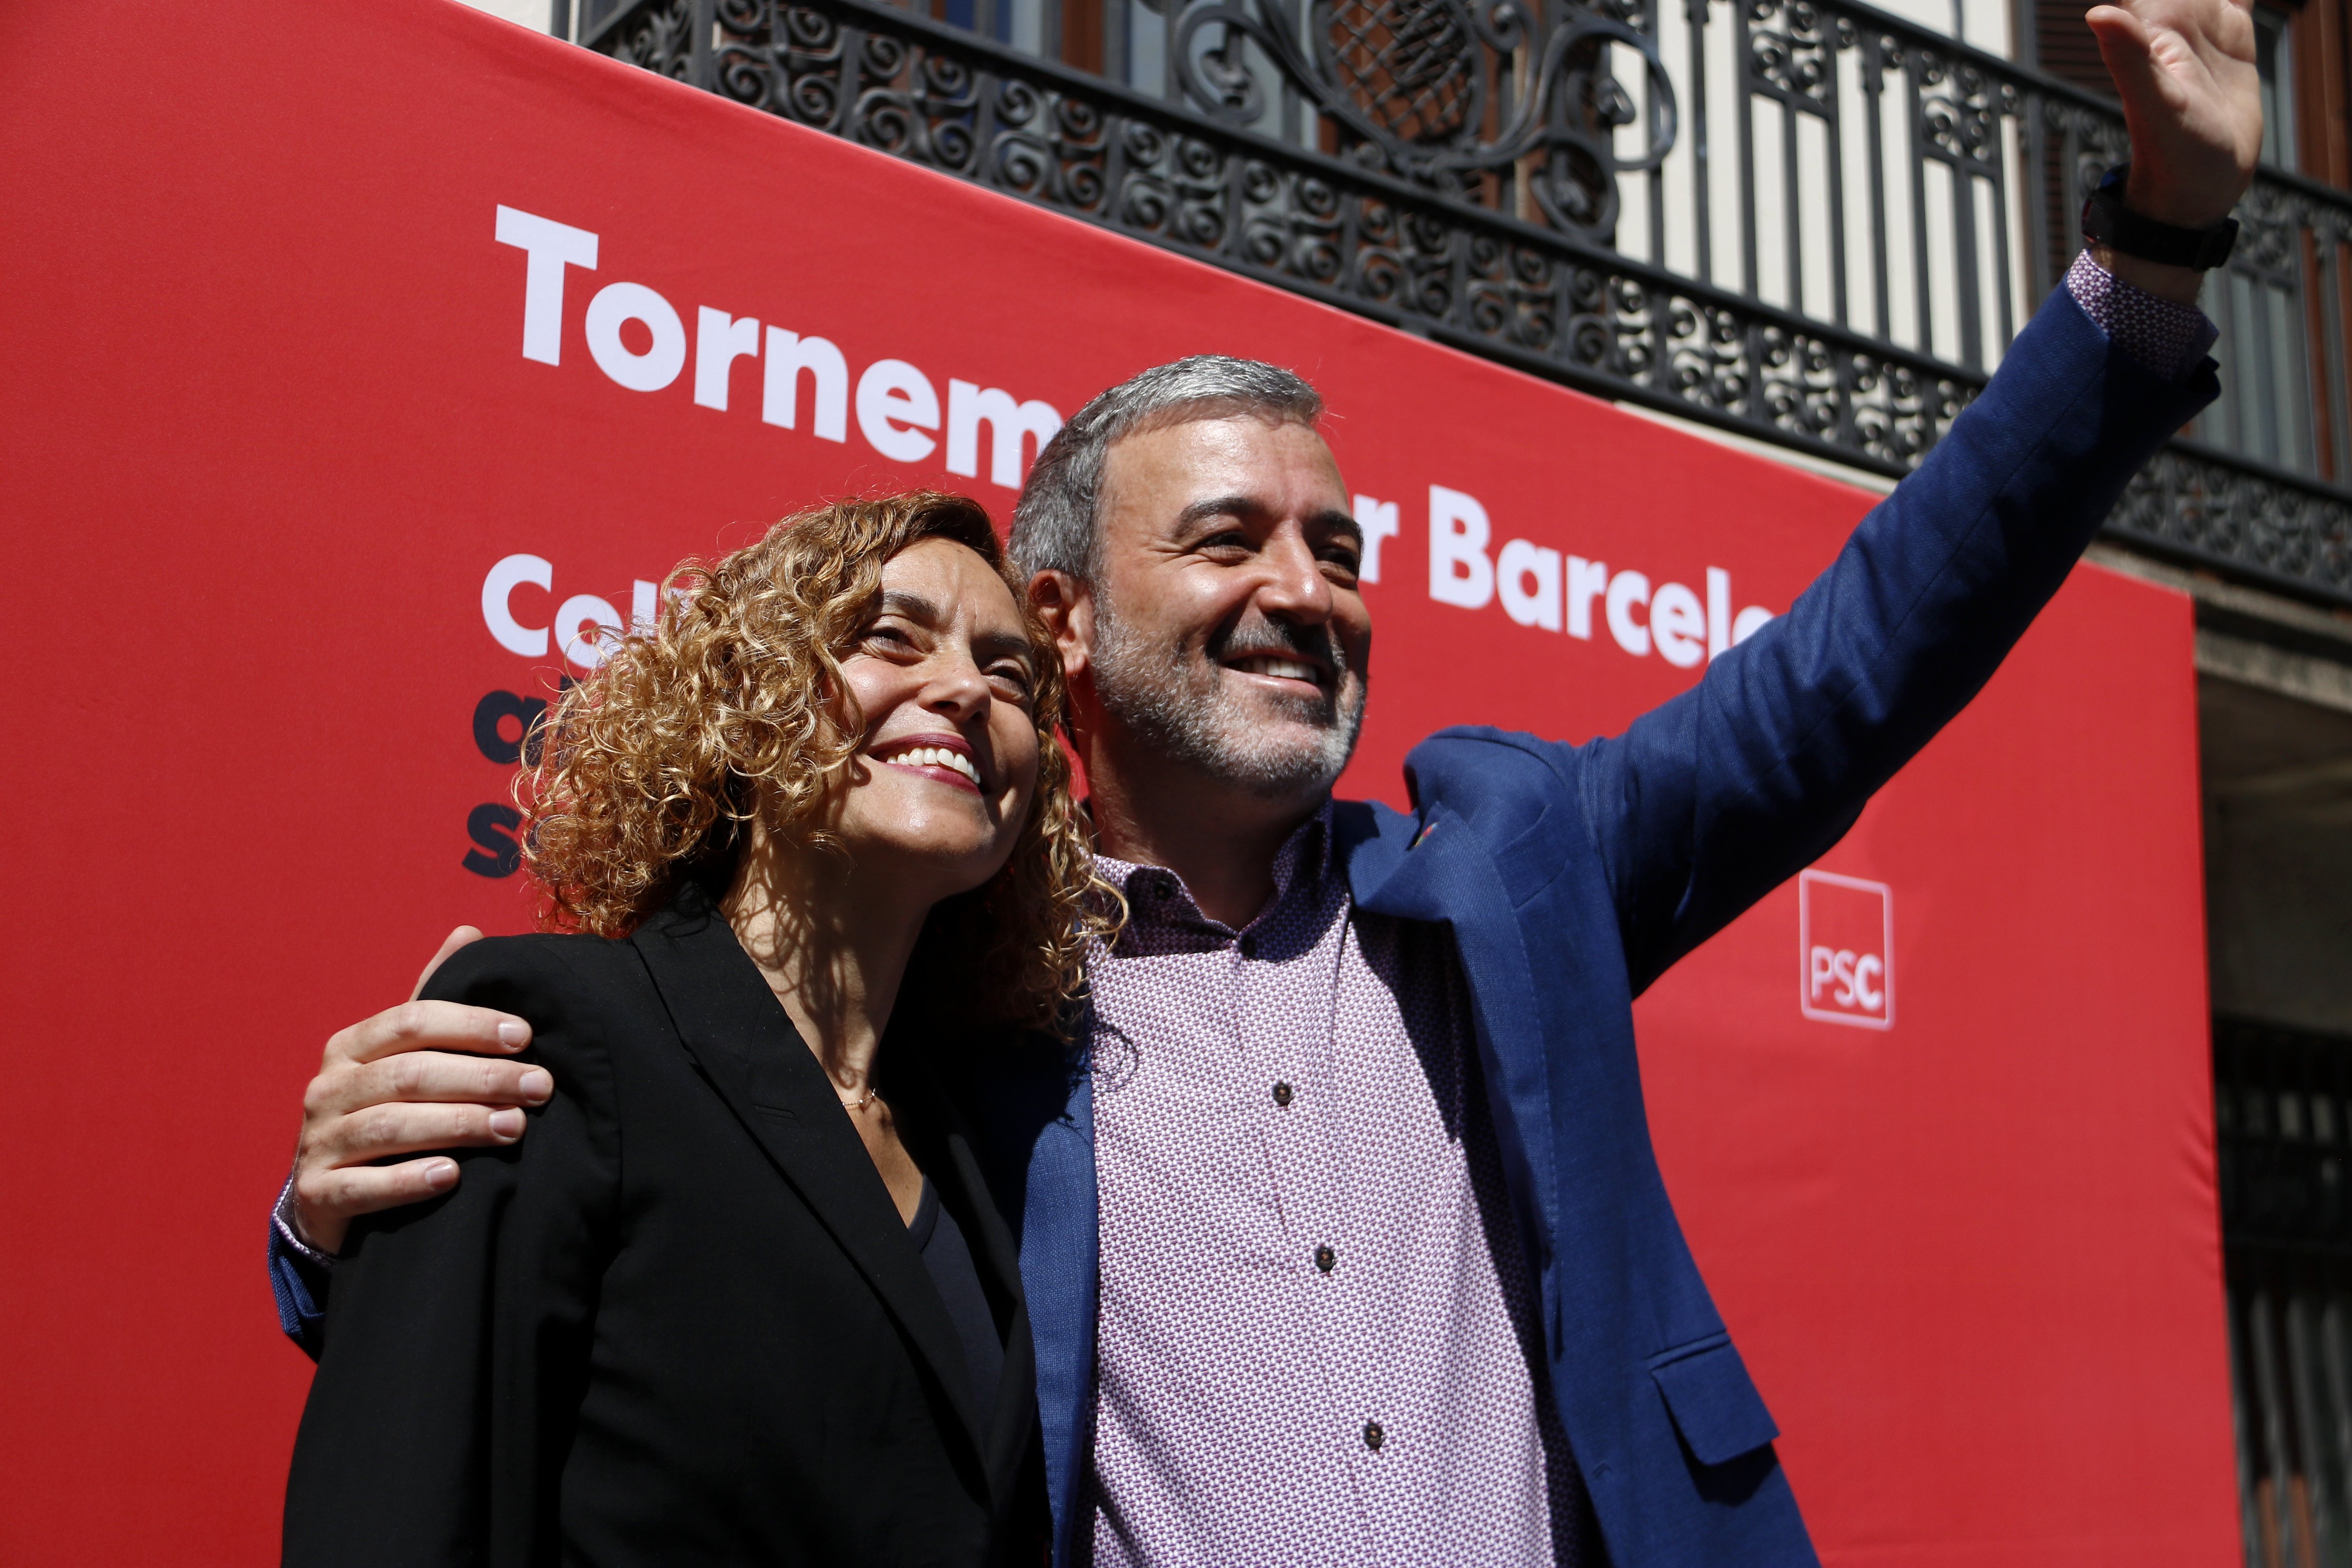 Collboni quiere abolir la prostitución en Barcelona y multar a los "puteros"